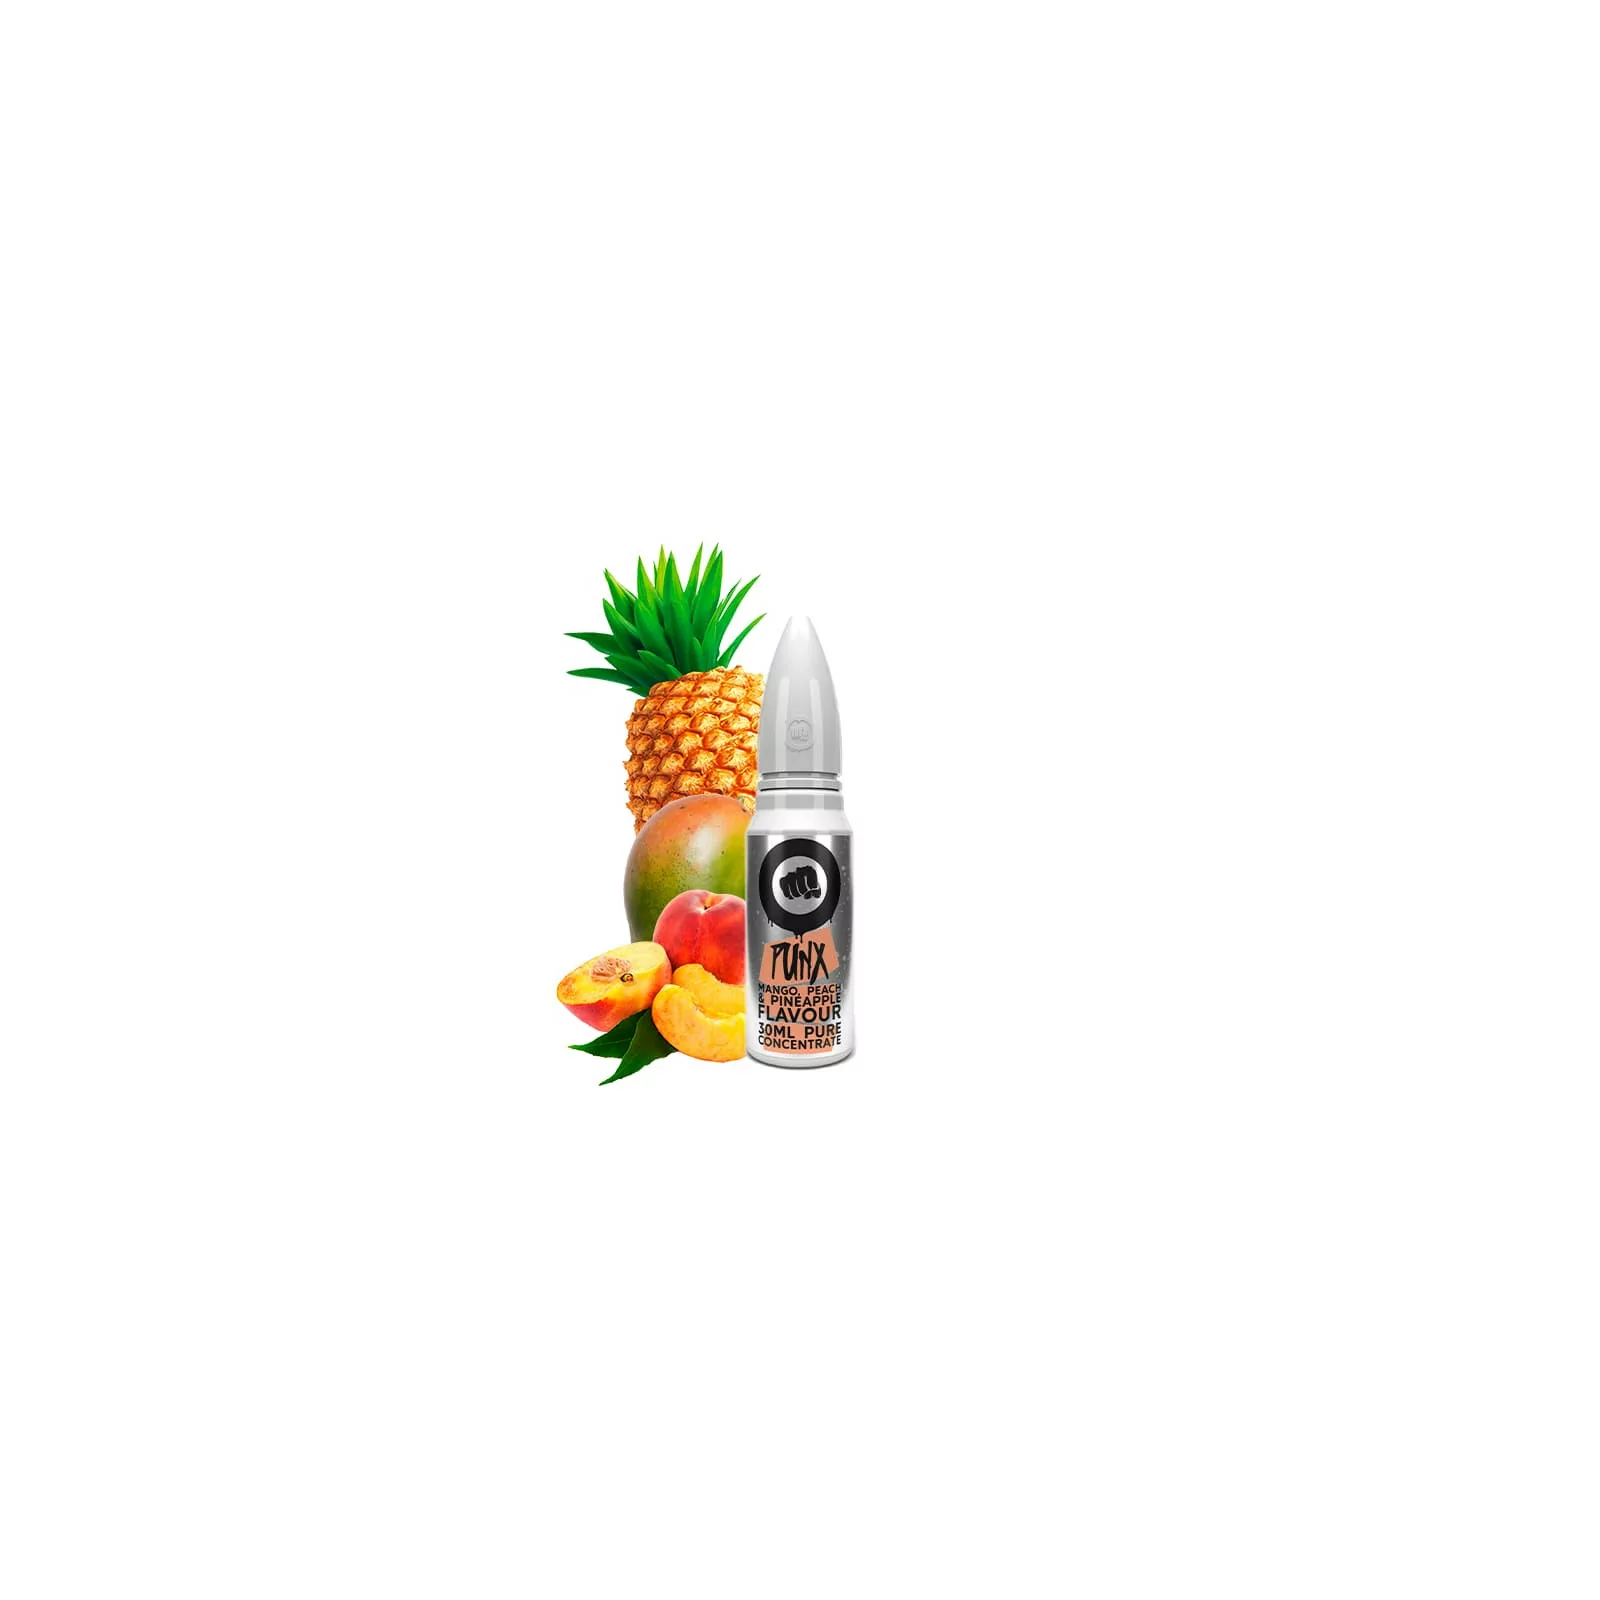 Concentré Mango, Peach & Pineapple 30ml - Punx